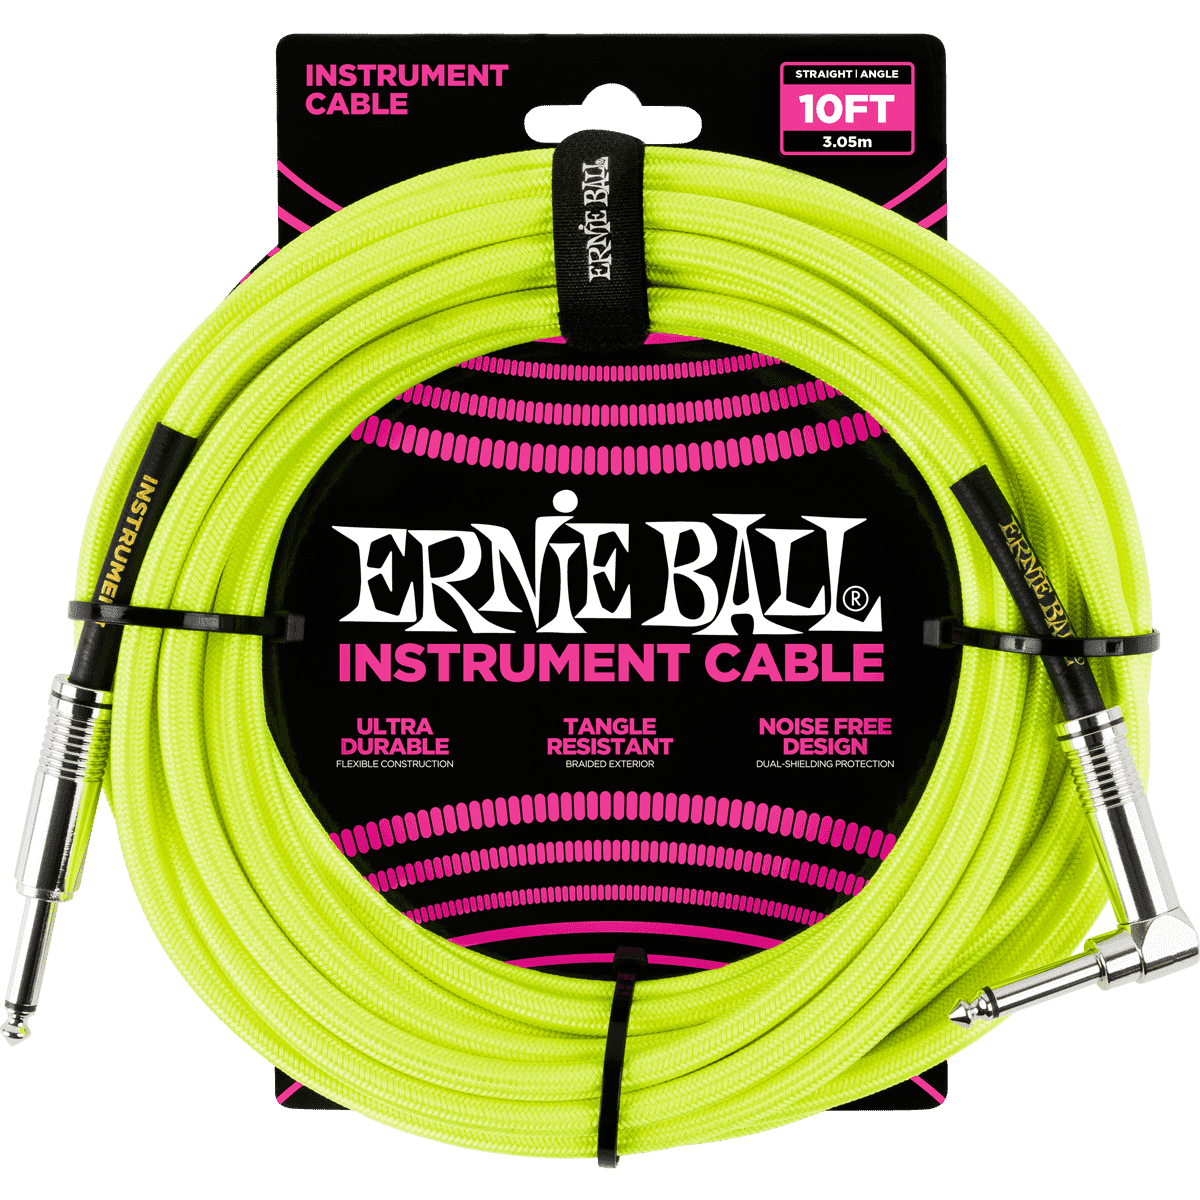 Ernie Ball 6080 Instrumentkabel Geel Gewoven | 3 Meter